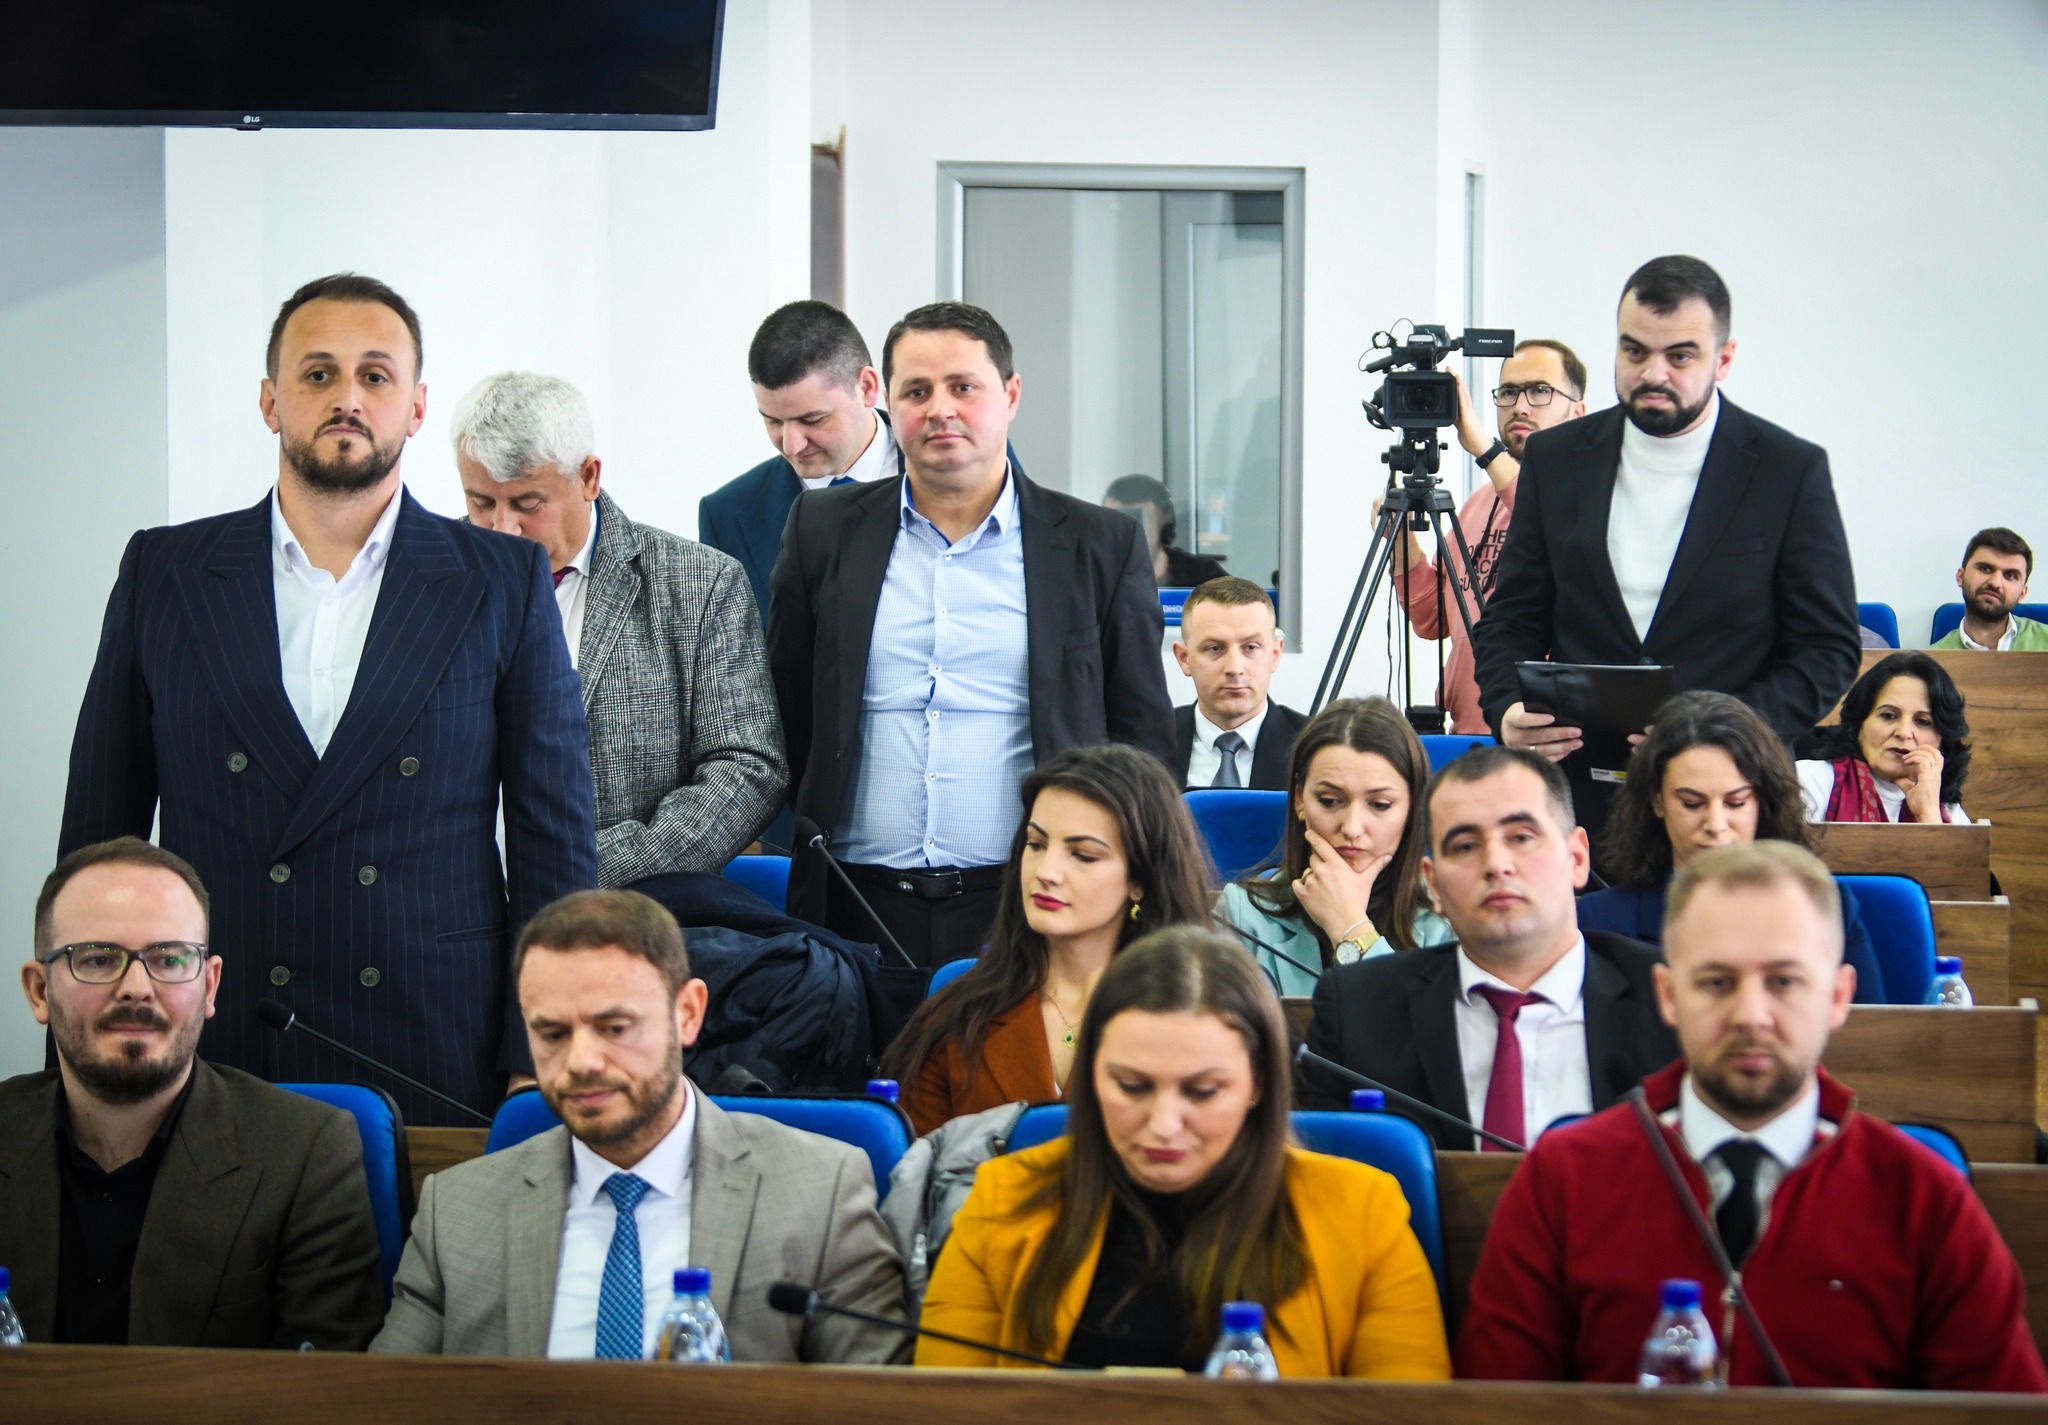  Këta janë 5 anëtarët e ri në kuvendin komunal të Podujevës